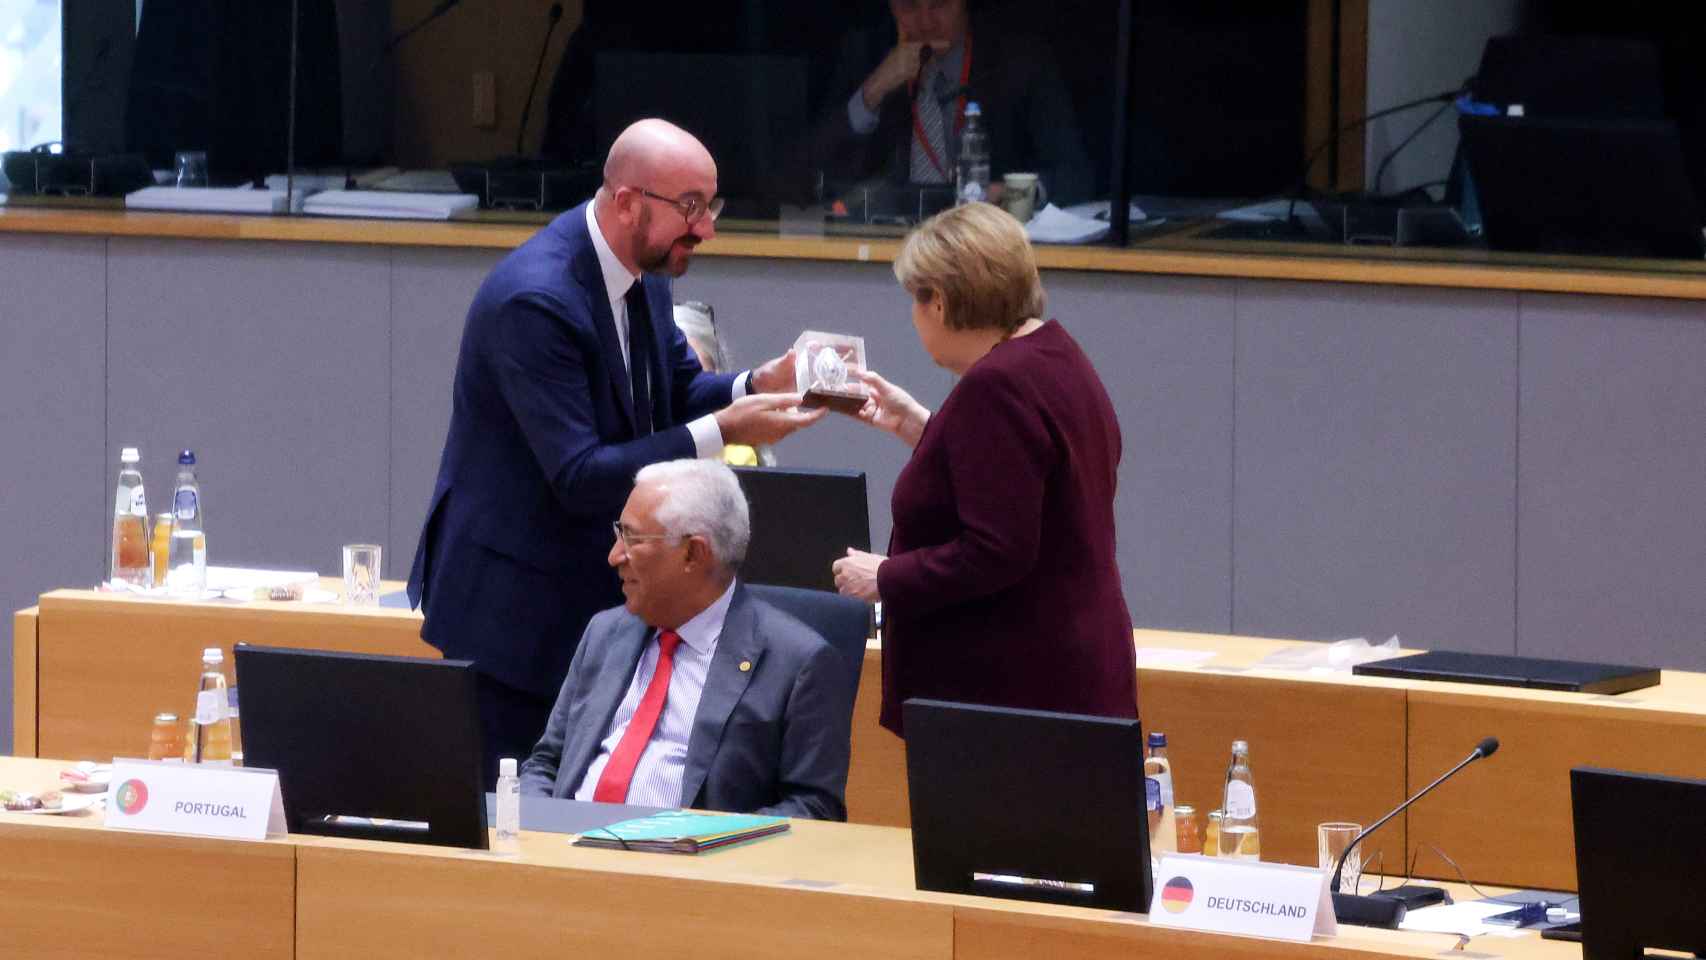 El presidente del Consejo Europeo entrega a Angela Merkel una escultura como regalo de despedida